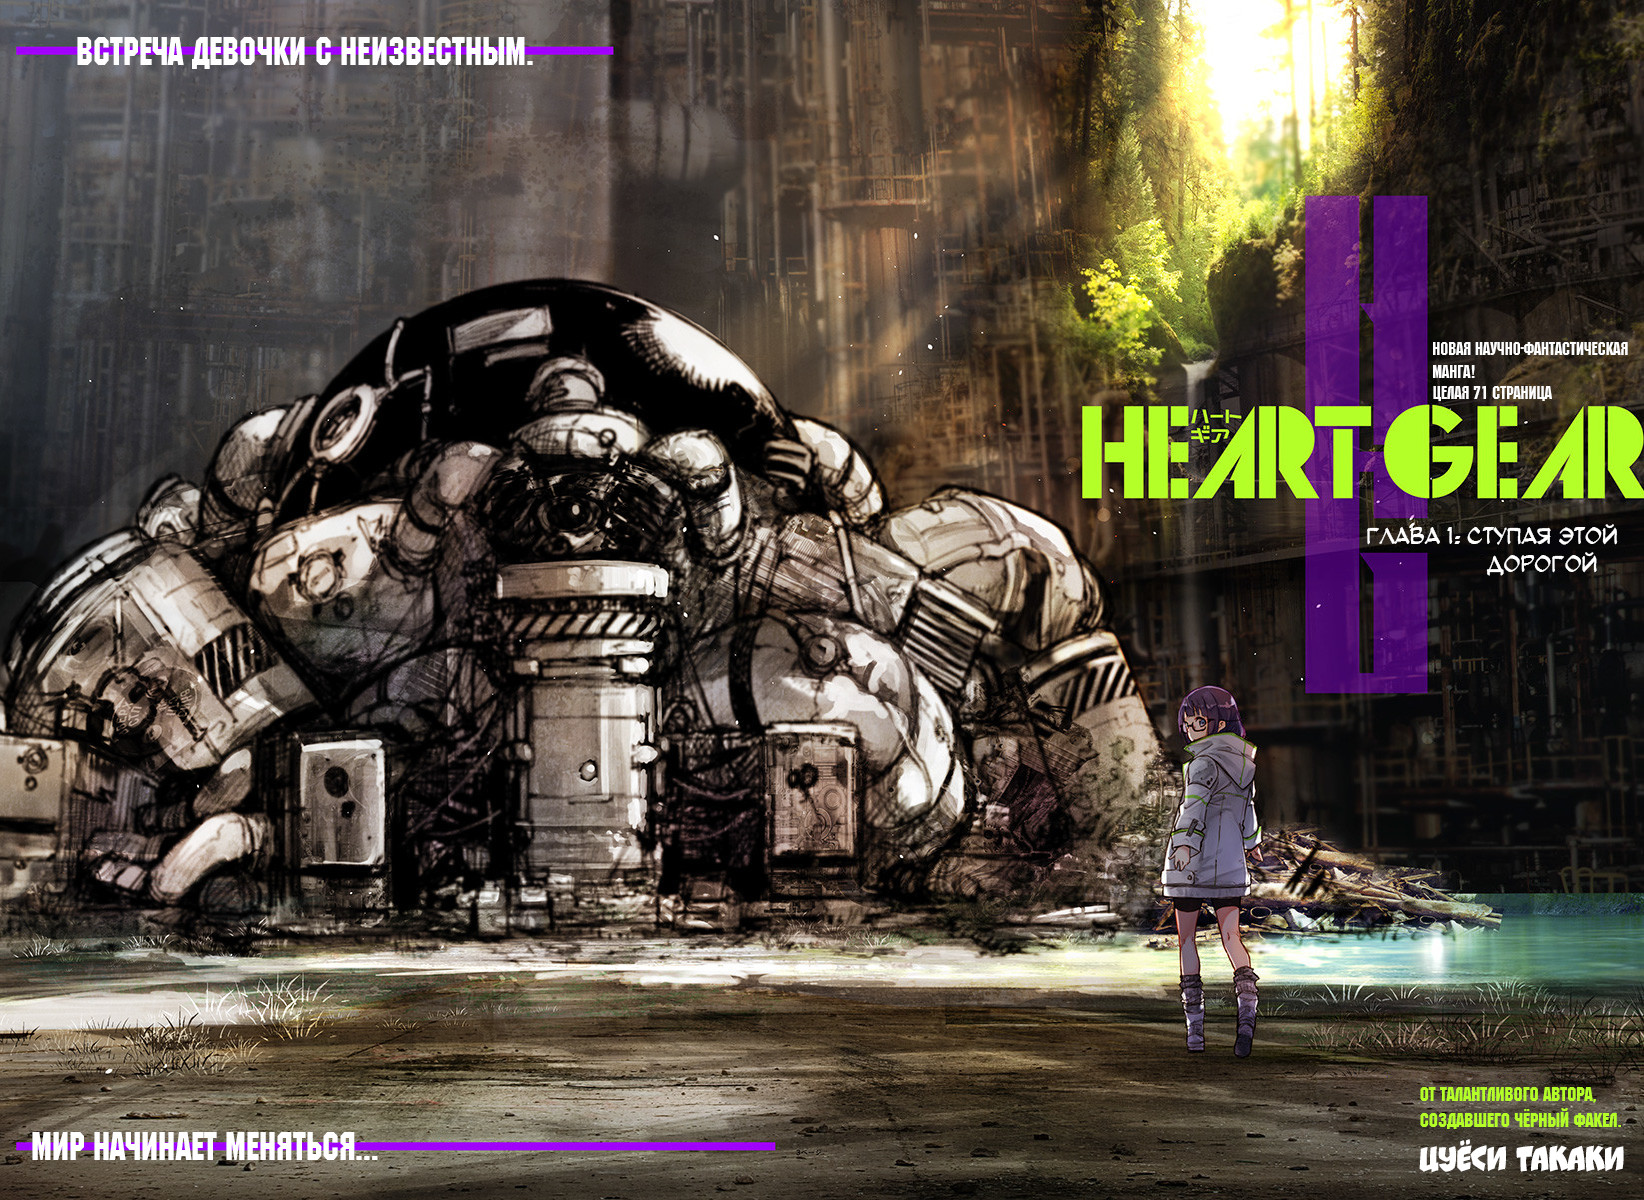 Heart Gear 1 - 1 Ступая этой дорогой